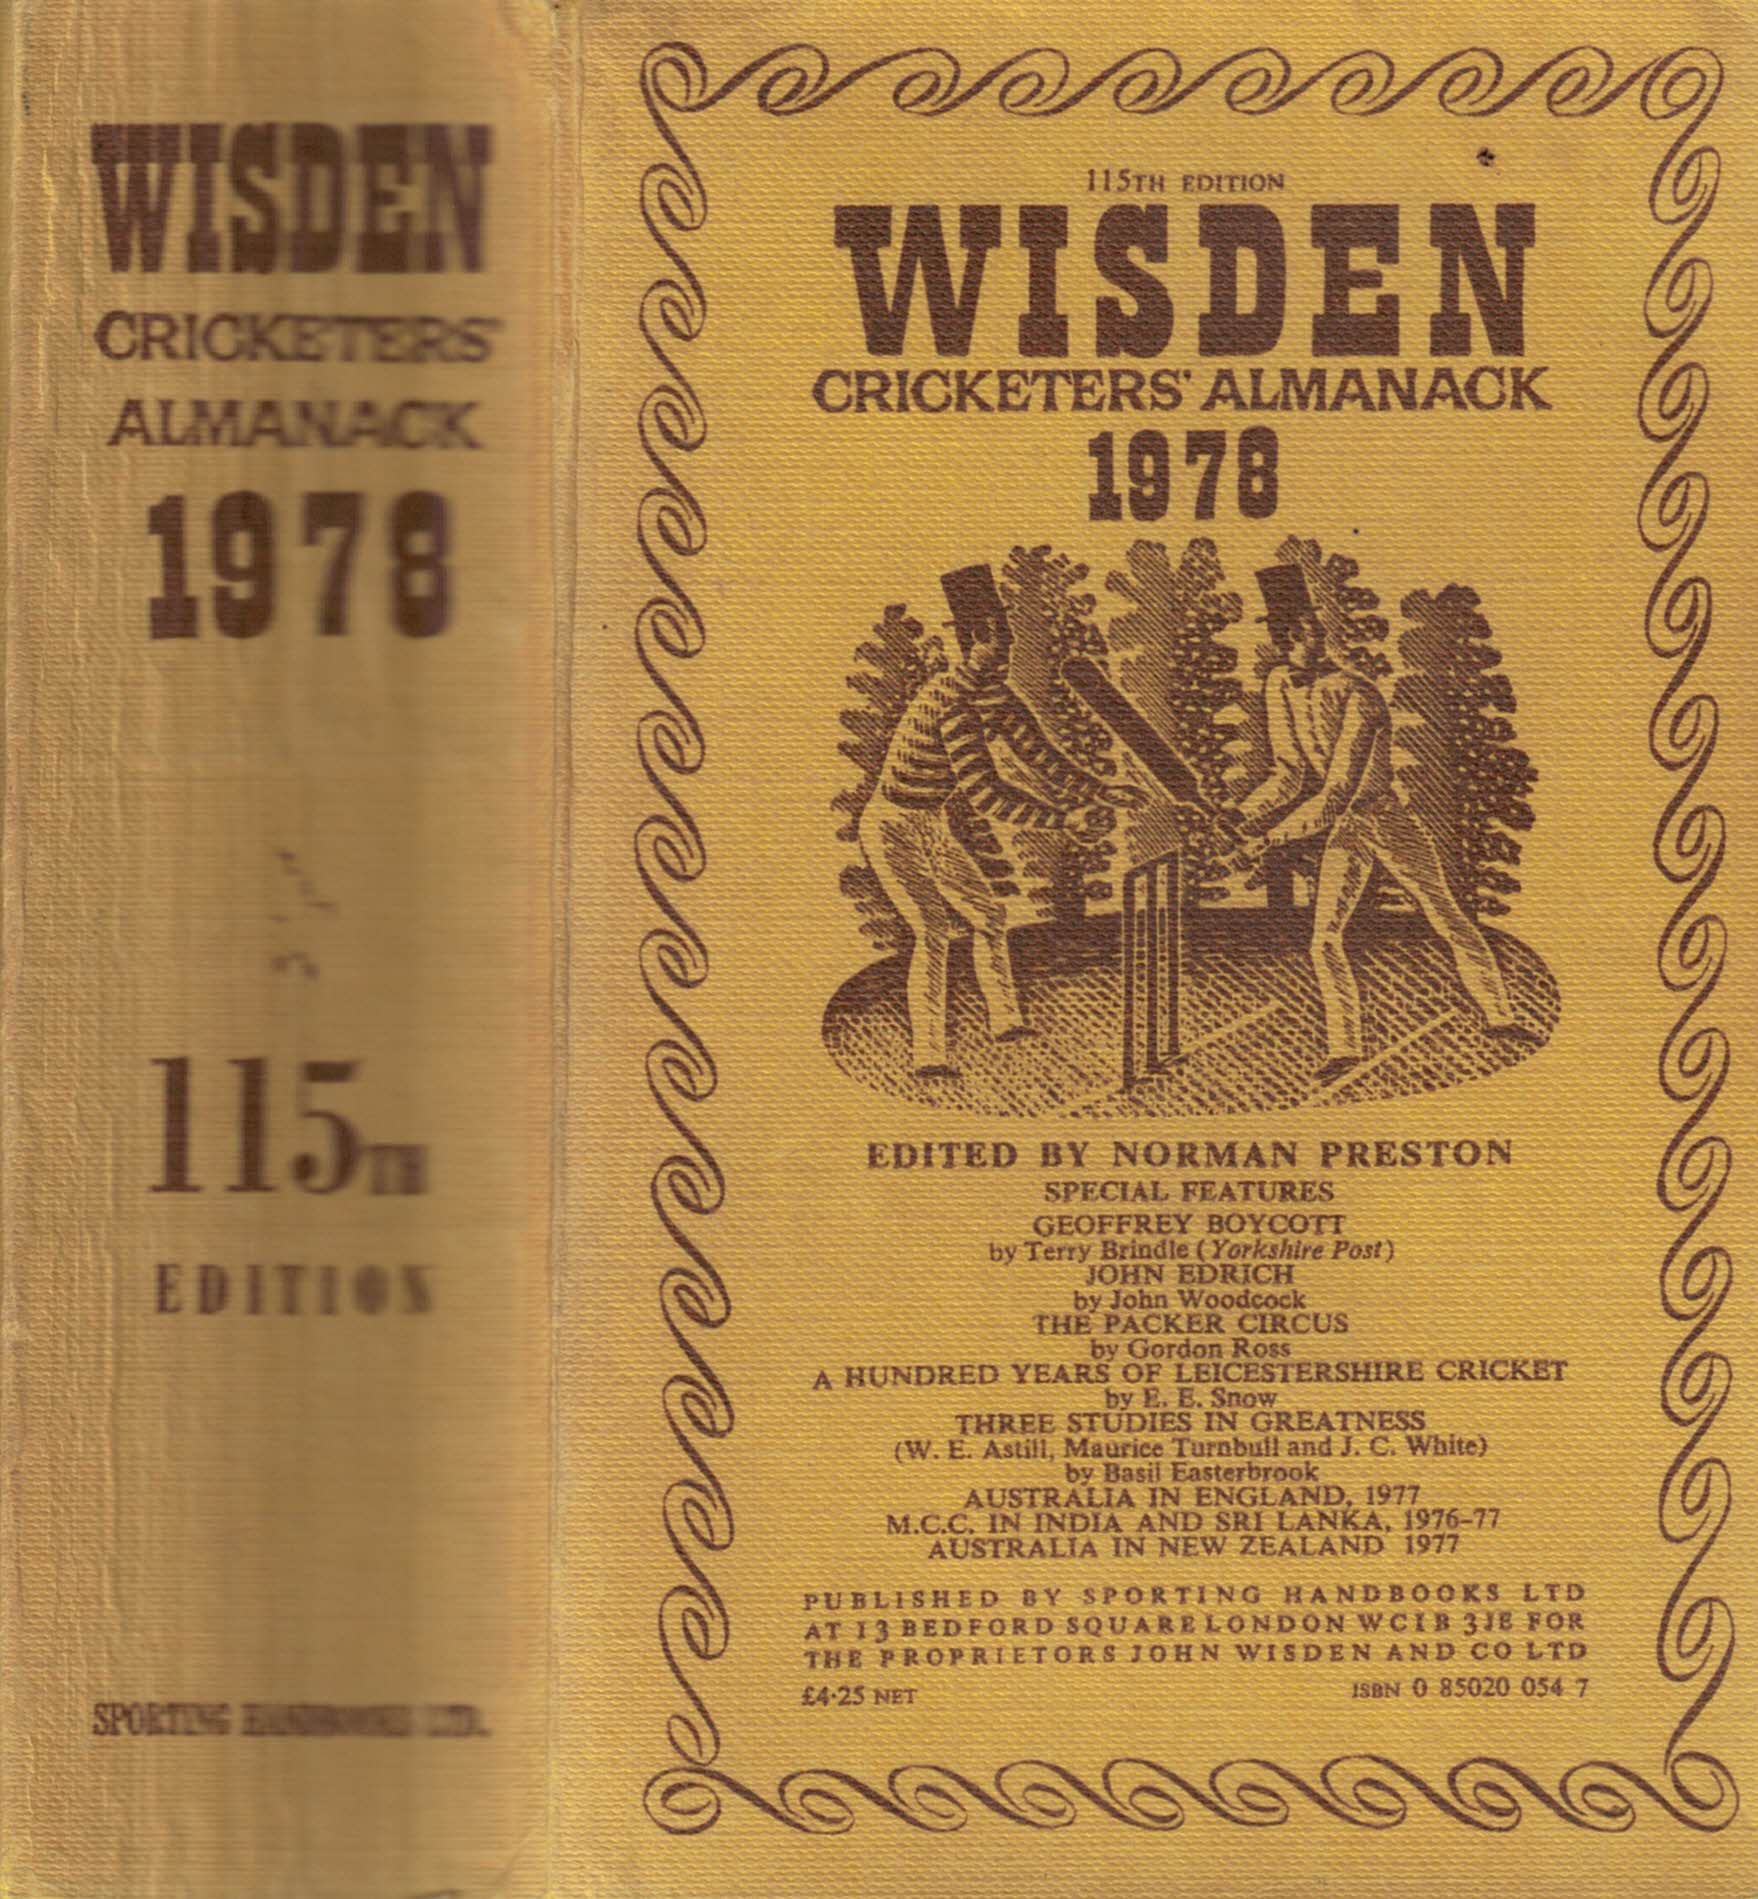 Wisden Cricketers' Almanack 1978 (115th edition)